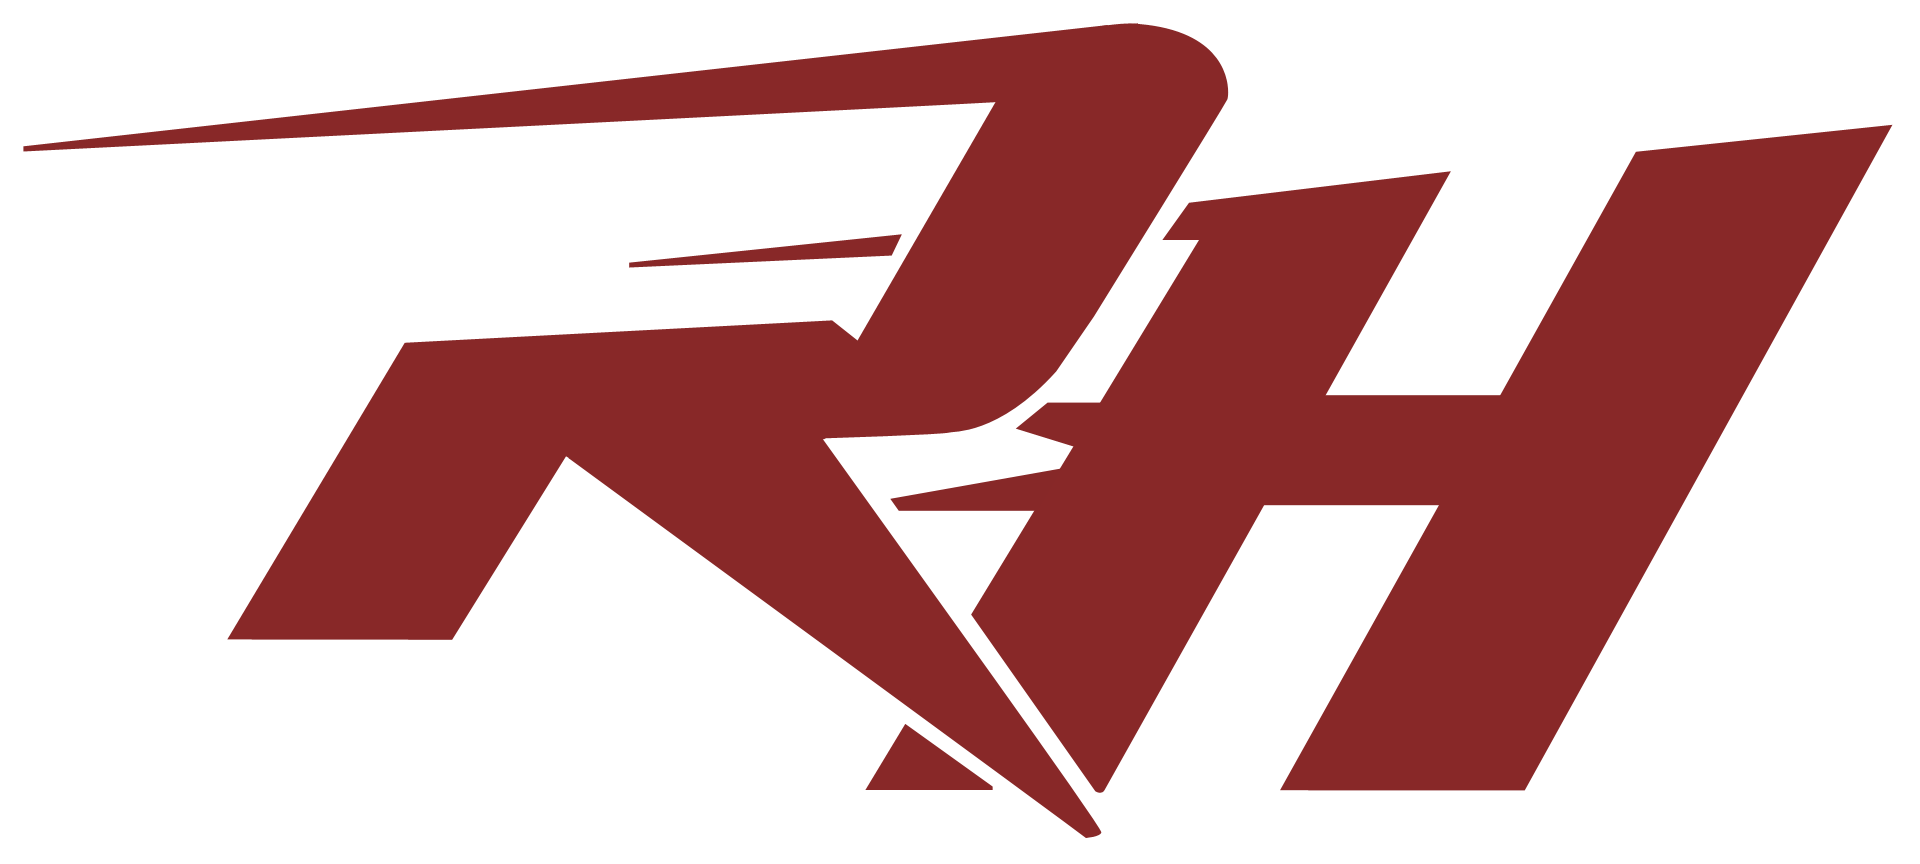 RH Logo - Rh logo png » PNG Image